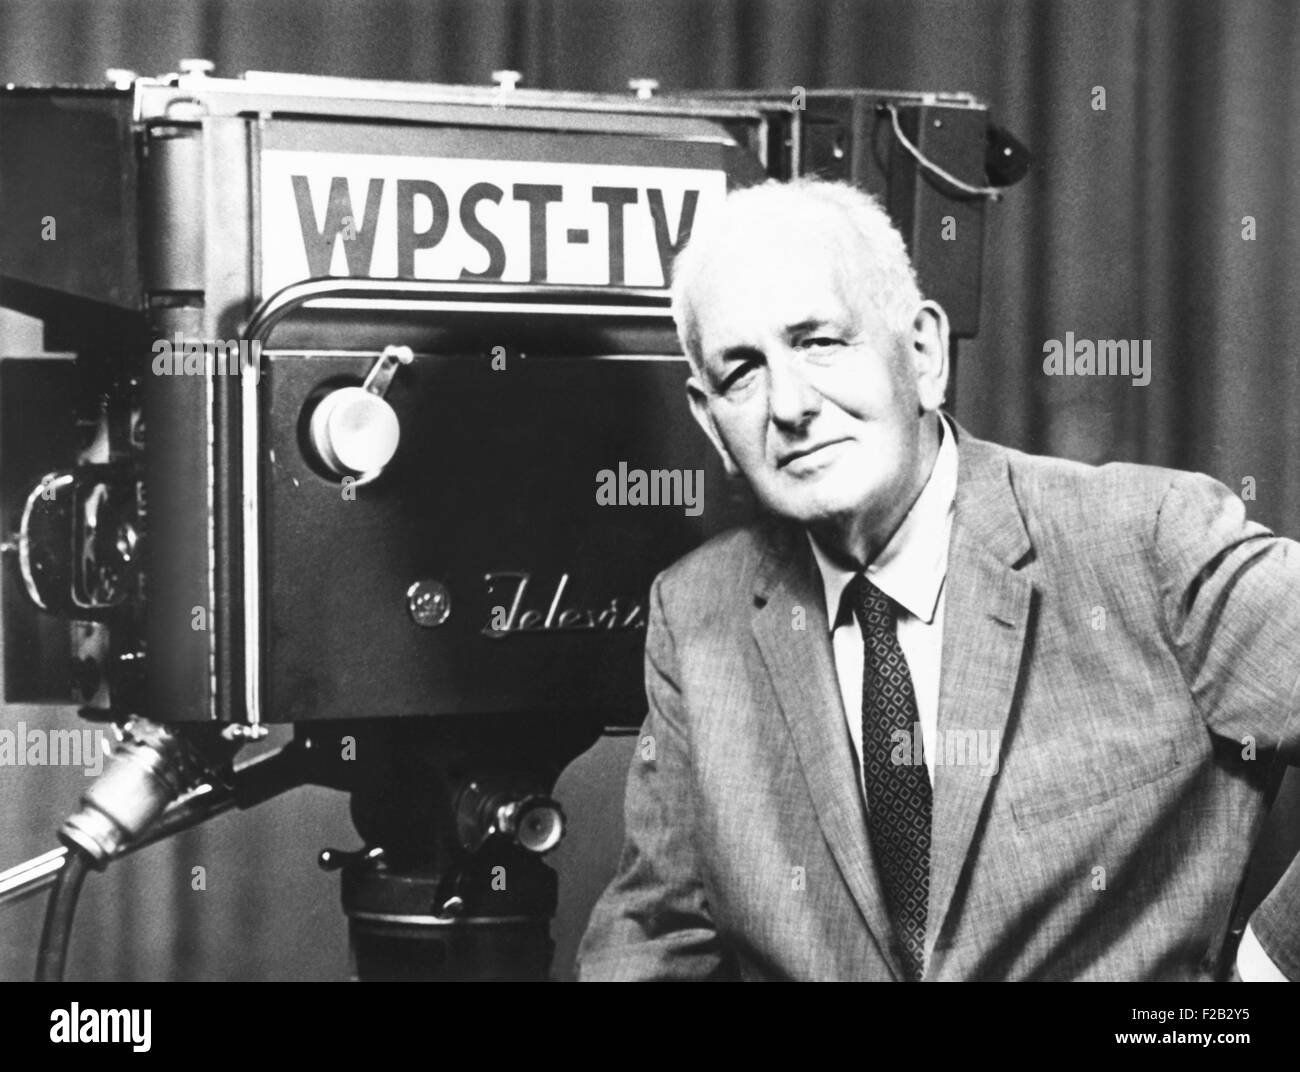 Gabriel Heatter, delante de una cámara de televisión WPST en 1960. Fue uno de los primeros reporteros y comentaristas de radio, en 1930. En la década de 1950 su influencia se dio paso a una nueva generación de emisoras. Heatter se jubiló en 1960. (CSU 2015 7 298). Foto de stock